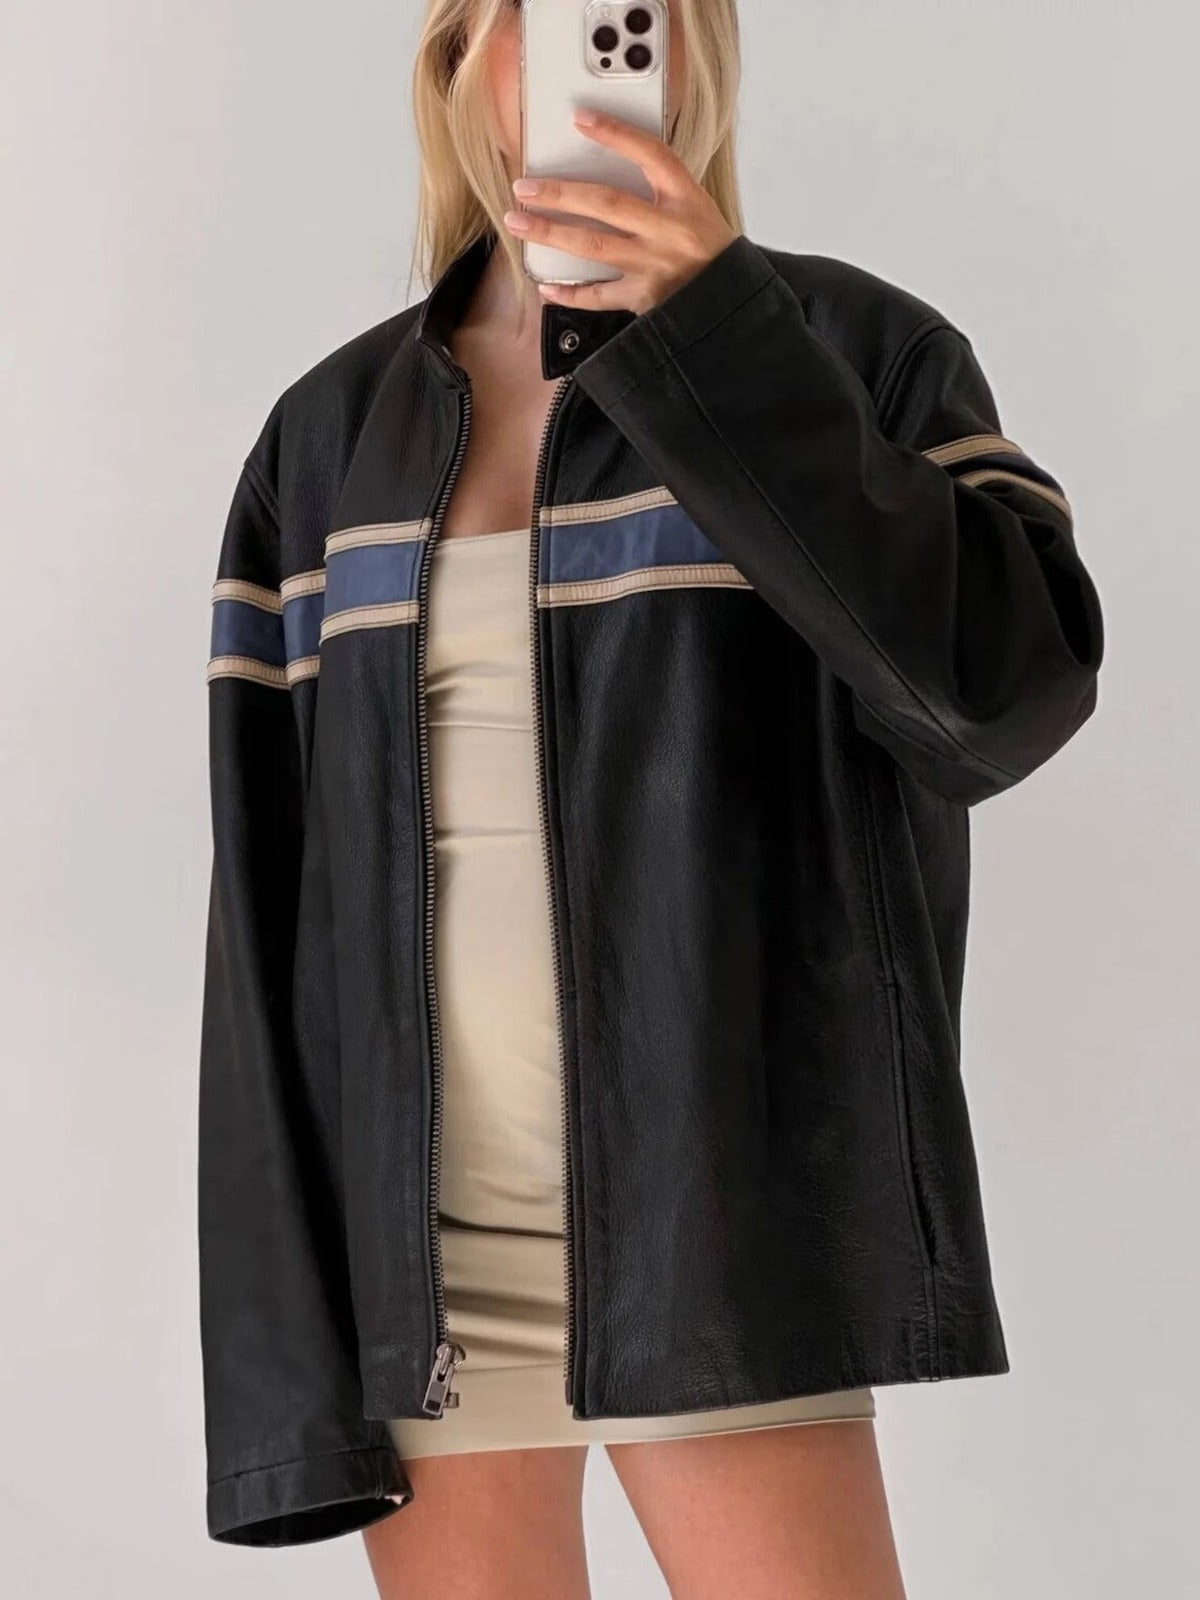 Oversized faux leather biker jacket - Women's fashion | Stradivarius United  States